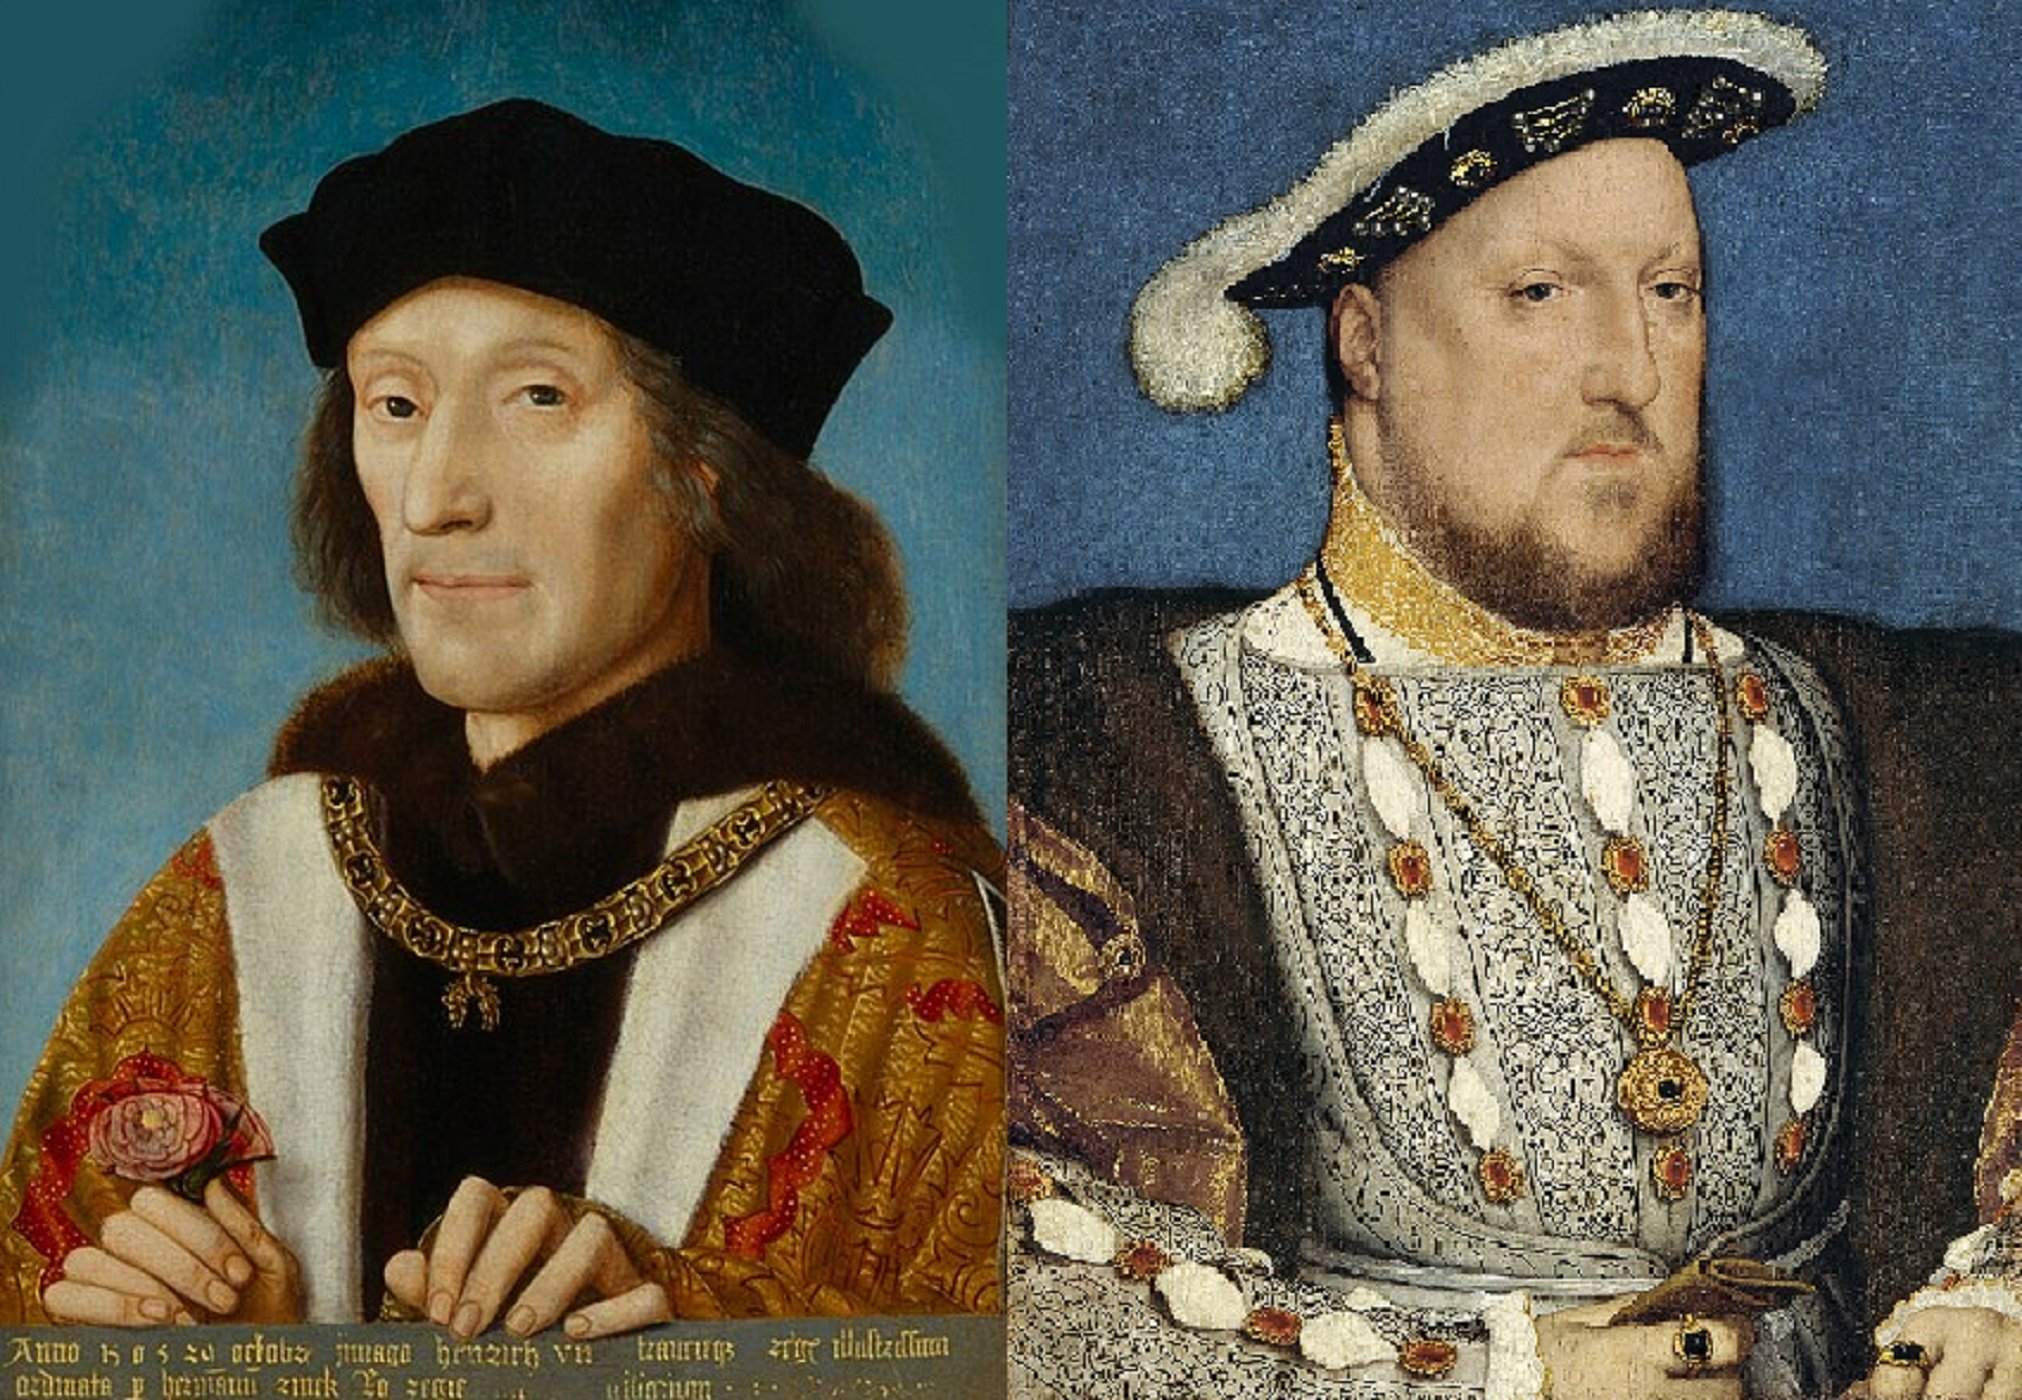 Enrique VII y Enrique VIII, los dos primeros Tudor. Fuente National Portrait Gallery, Londres y Museo Tyssen Bornbemisza, Madrid